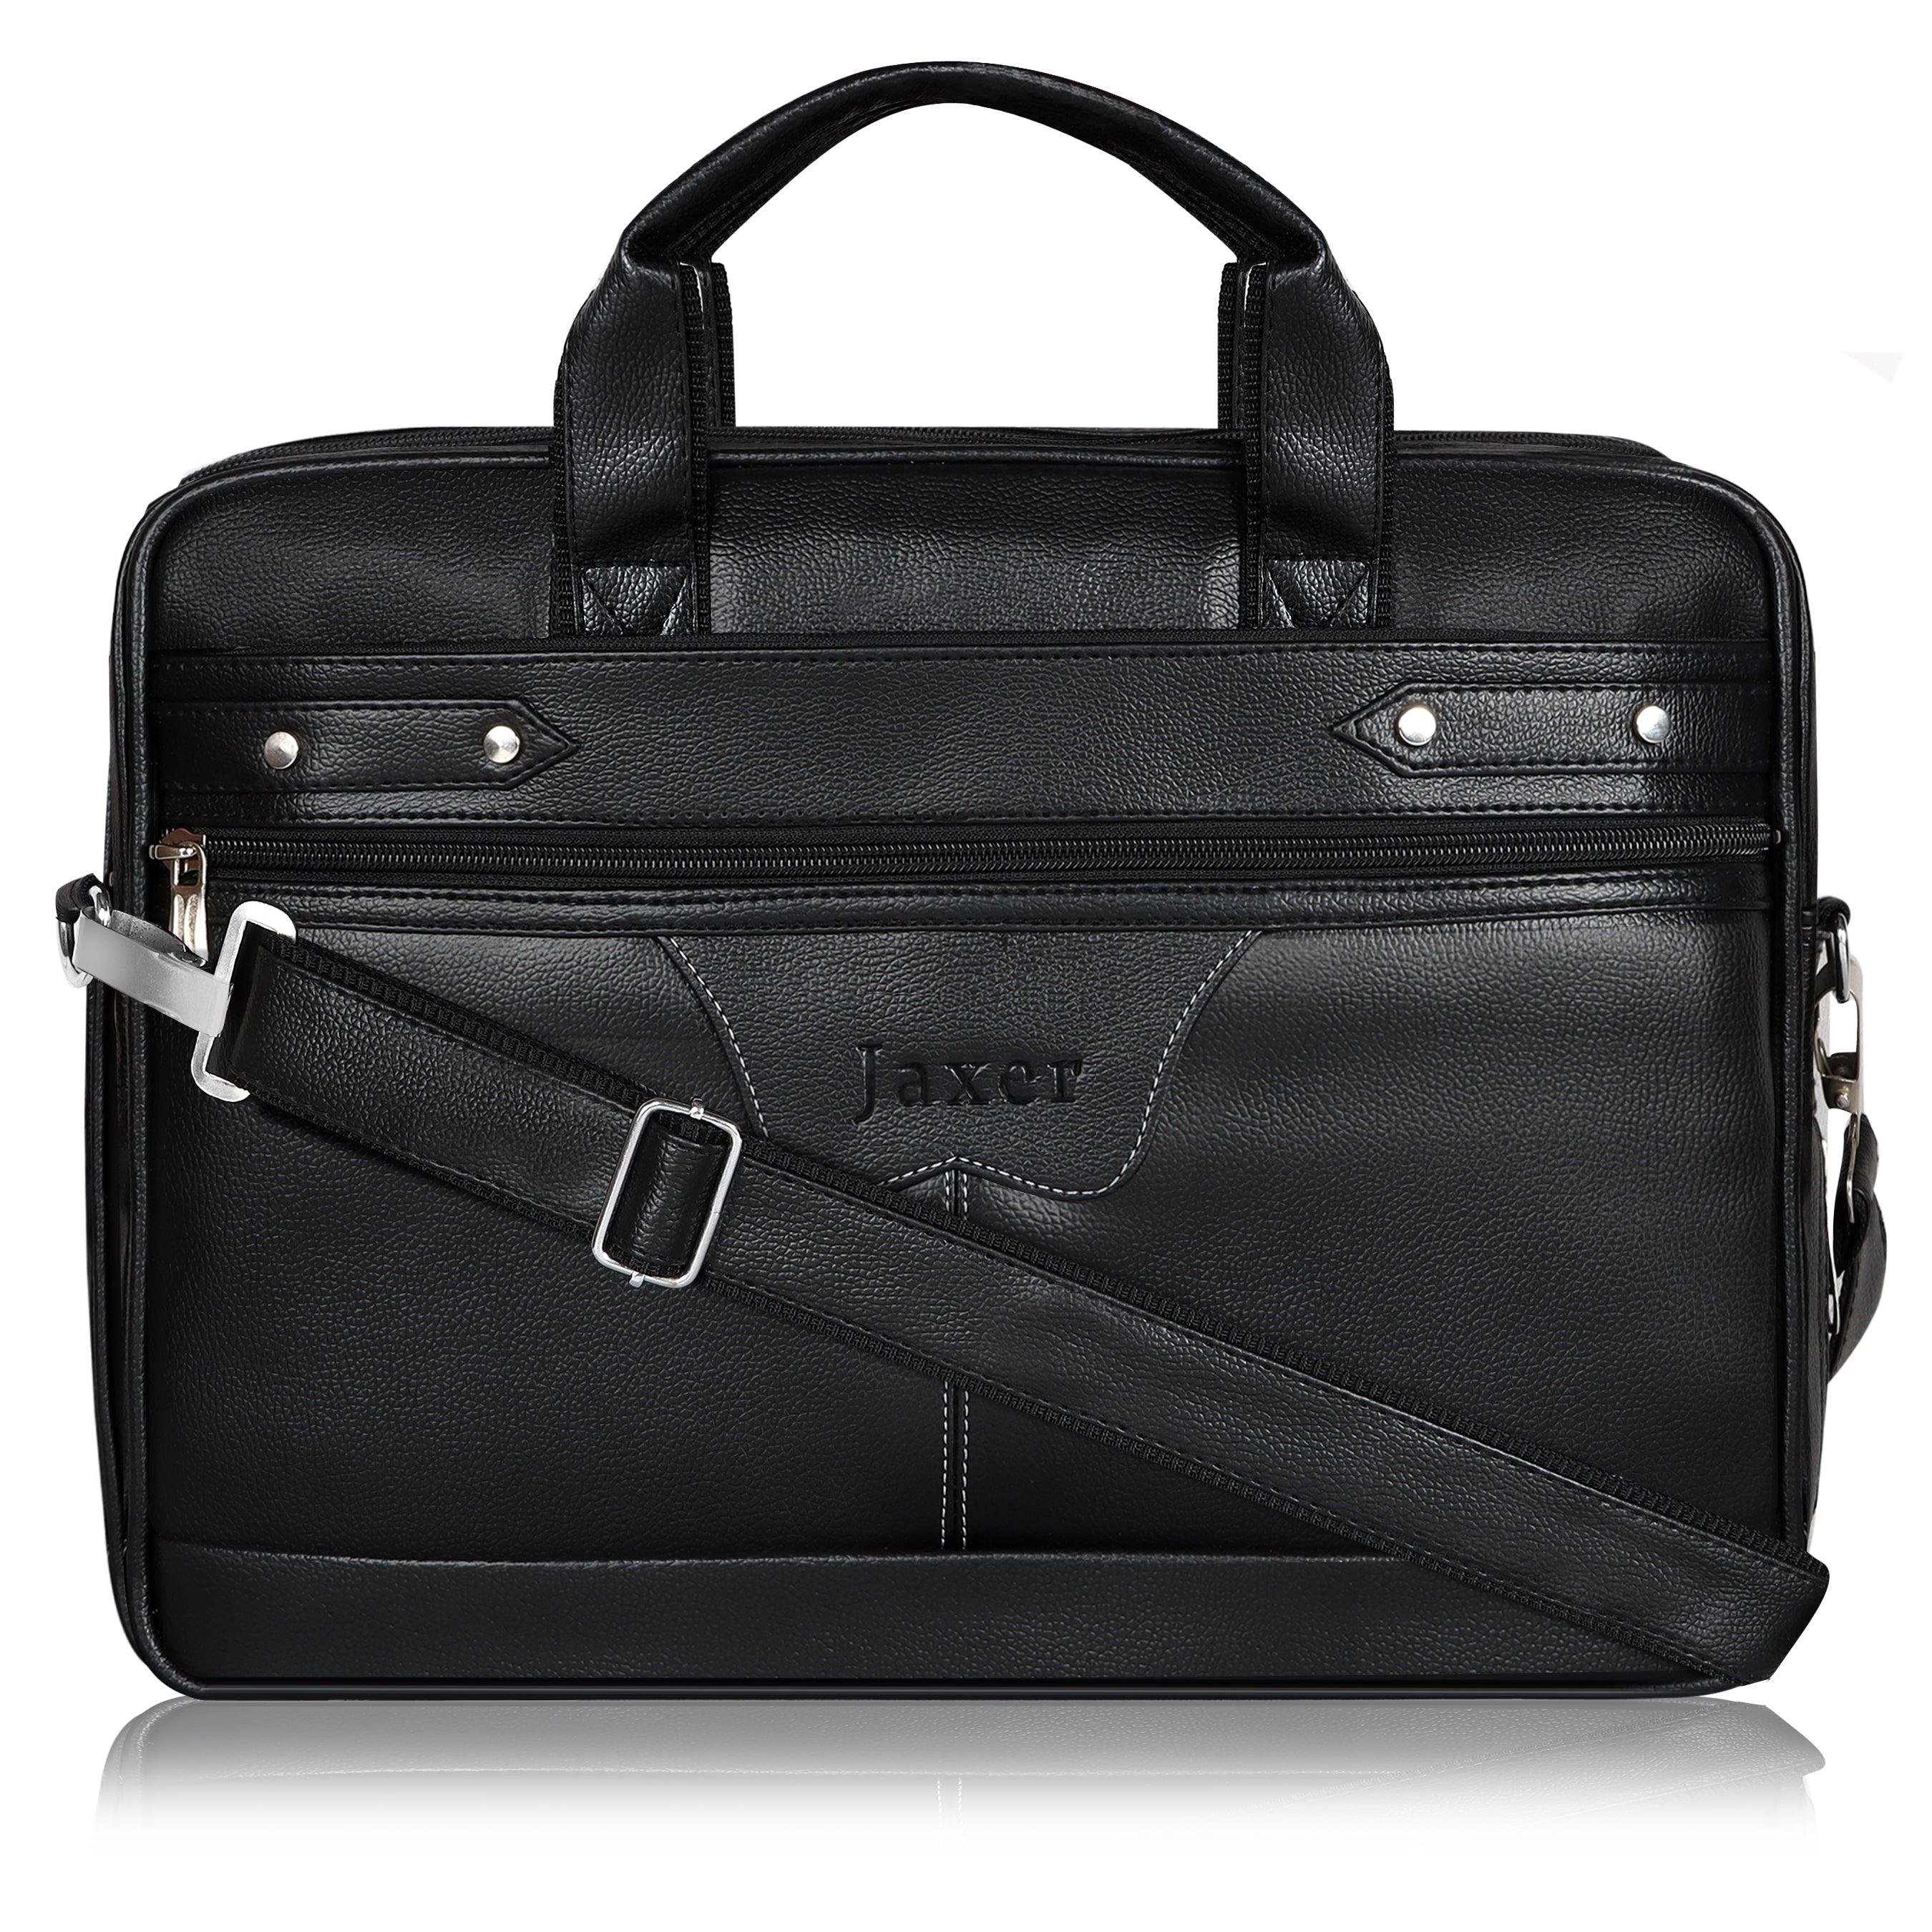 Jaxer Black Leather Laptop Messenger Bag for Men - JXRMB003 - Jainx Store